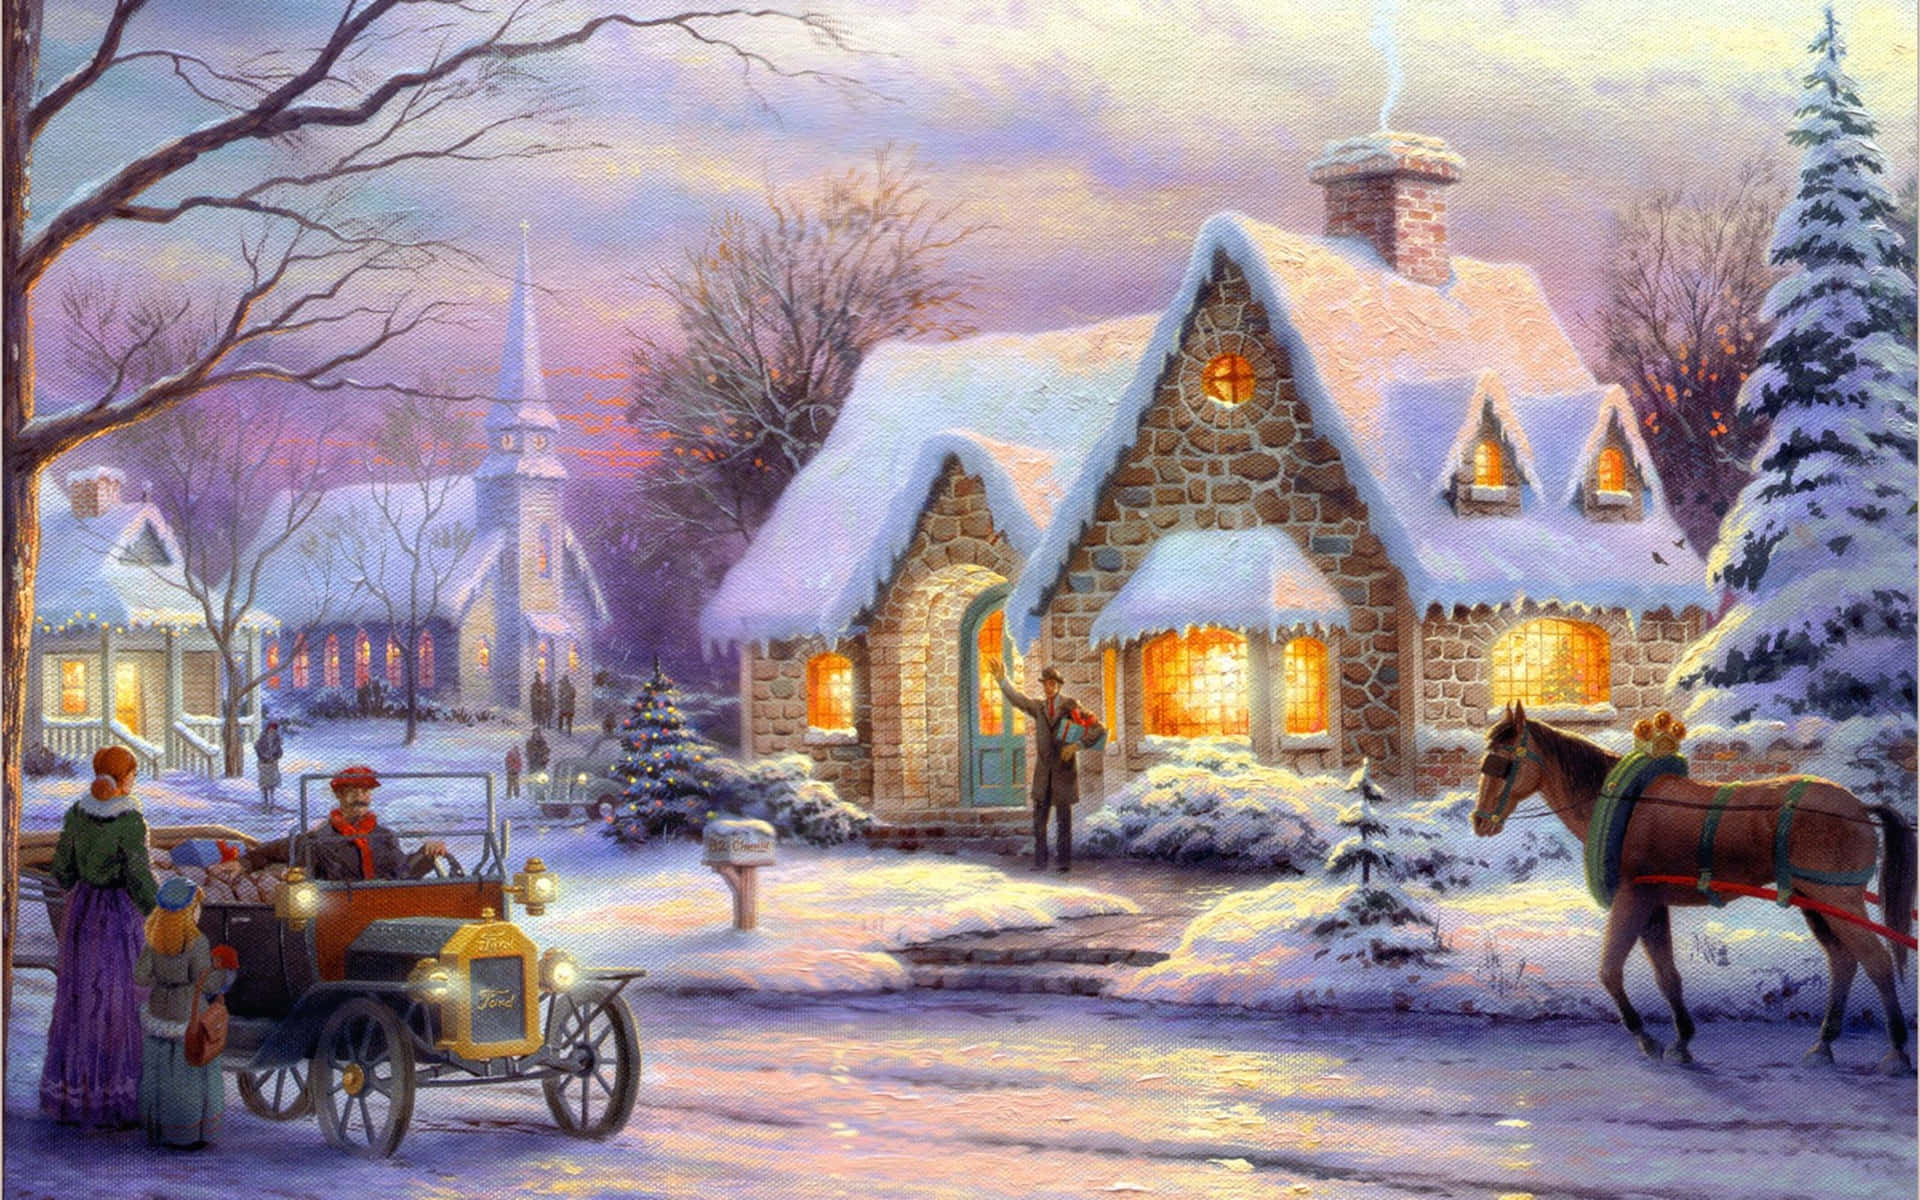 Nyd den åndfulde ferie stemning af en traditionel juleby. Wallpaper